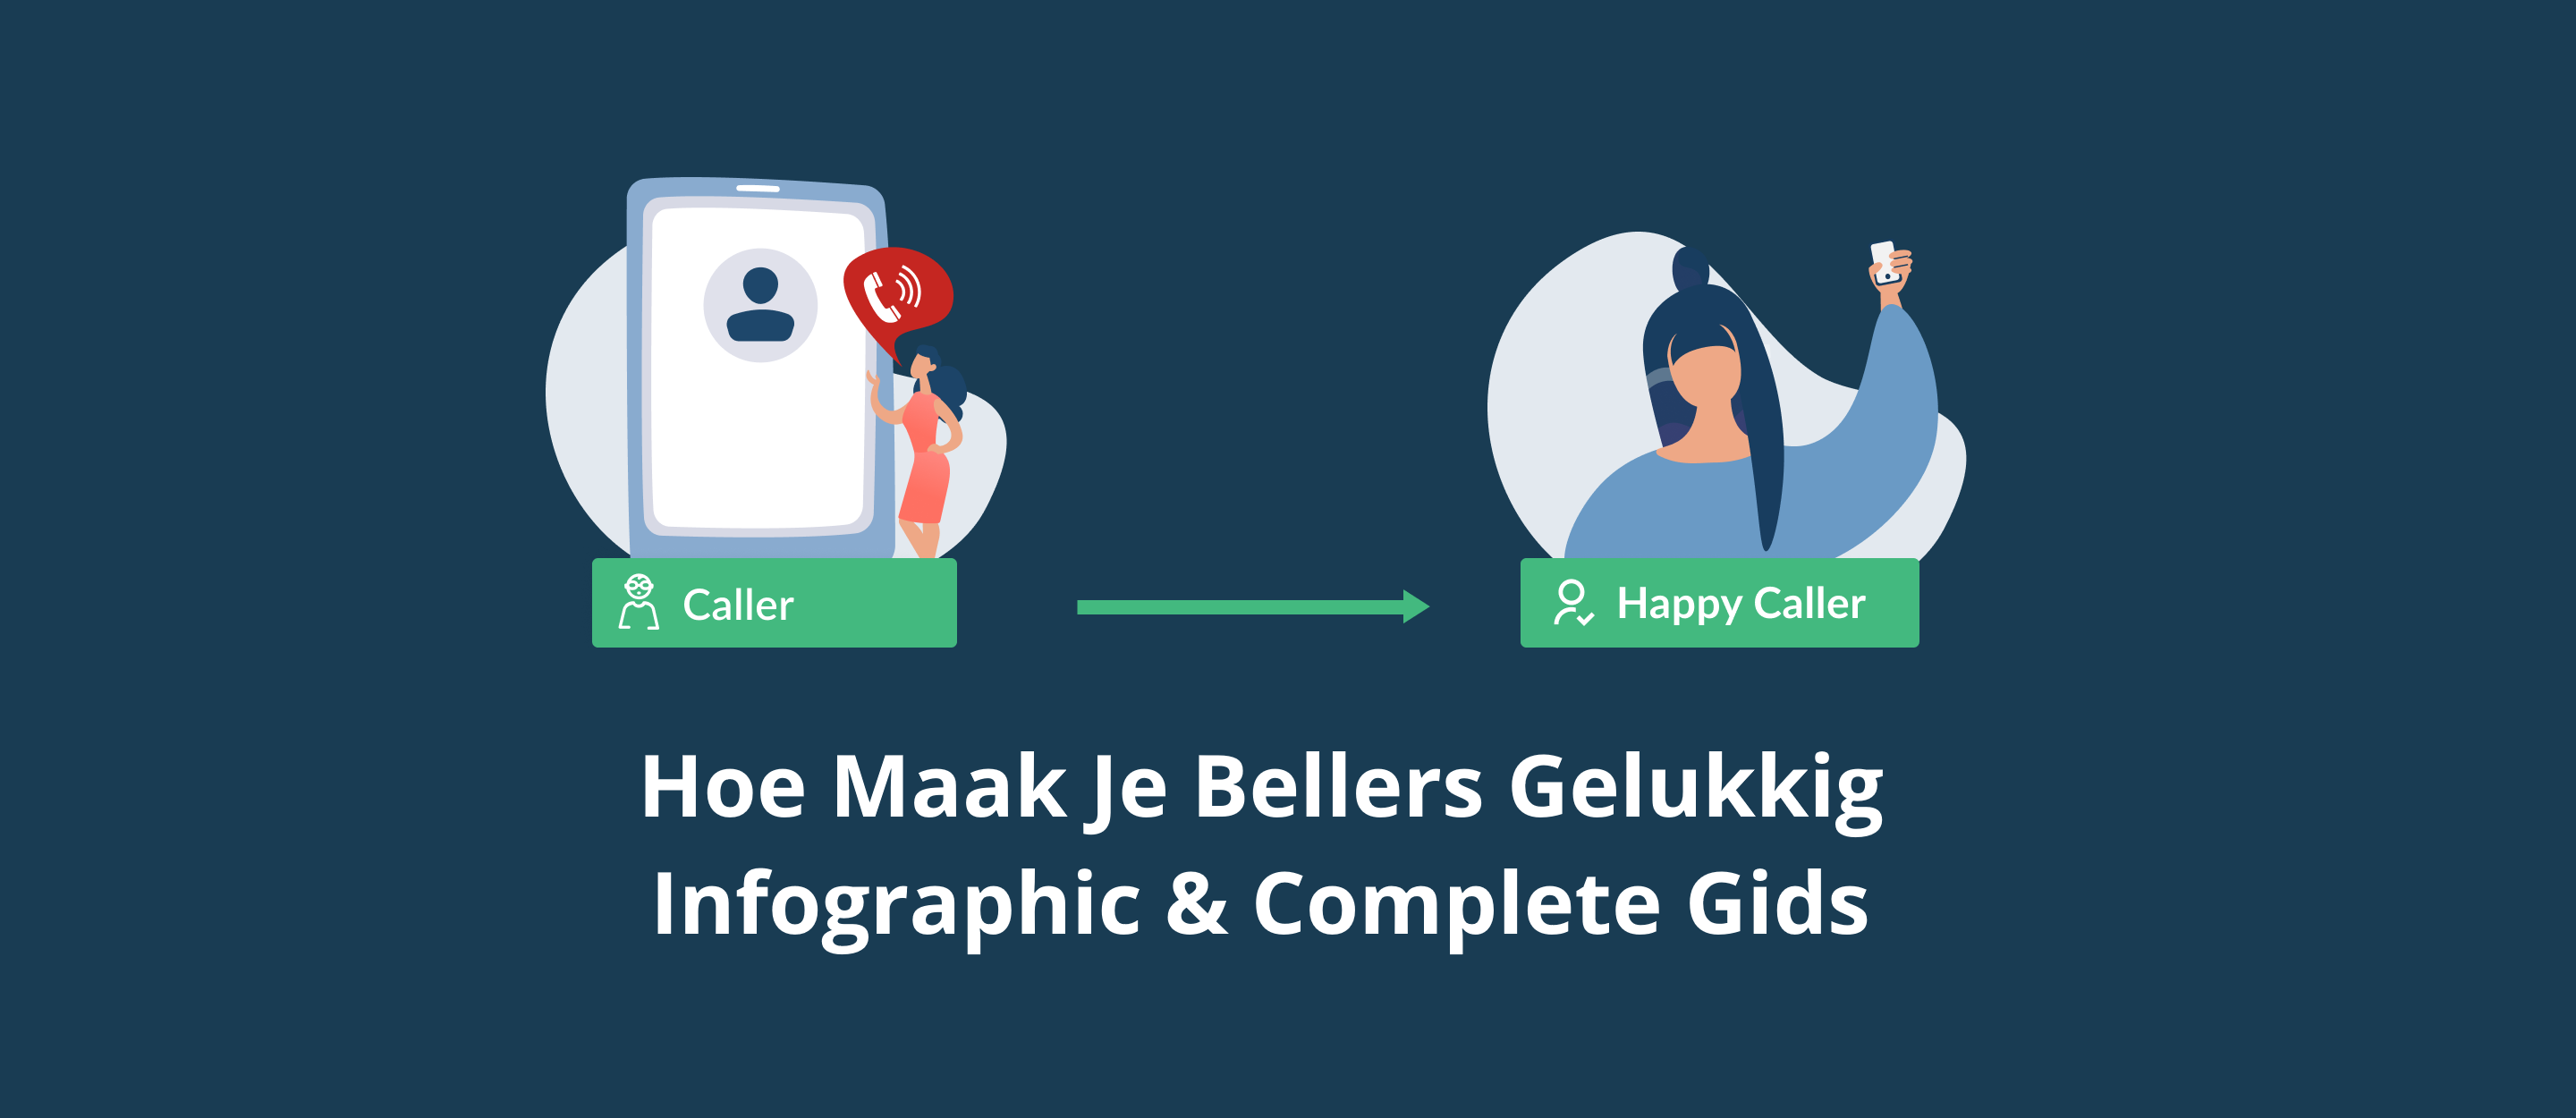 Hoe Maak Je Bellers Gelukkig - Infographic en Complete Gids